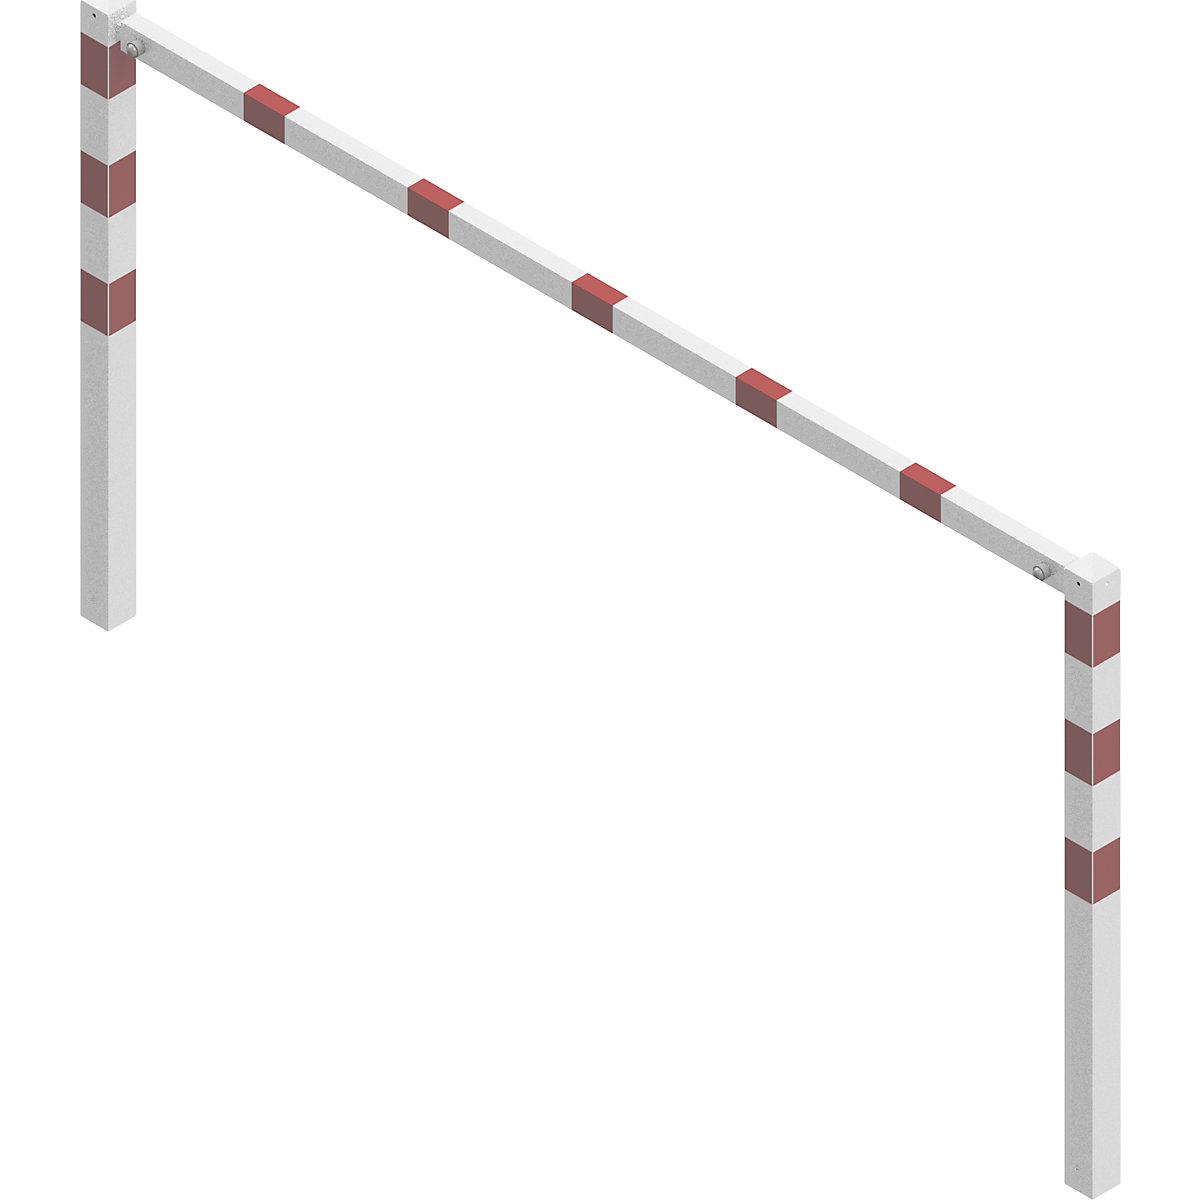 Barrière à visser, avec barre supérieure, blanc avec bandes réfléchissantes rouges, largeur 2000 mm-3